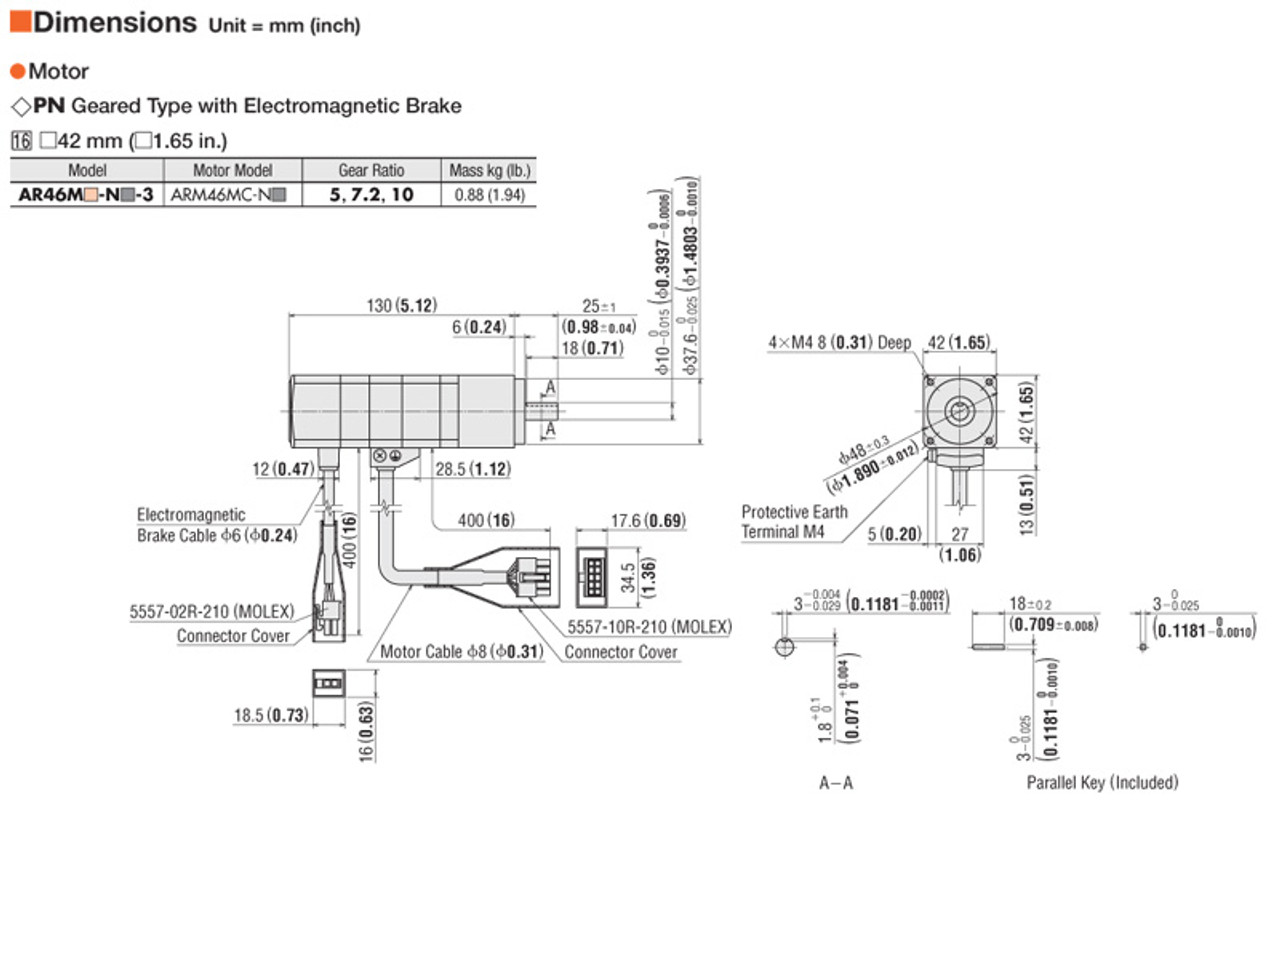 ARM46MC-N10 - Dimensions